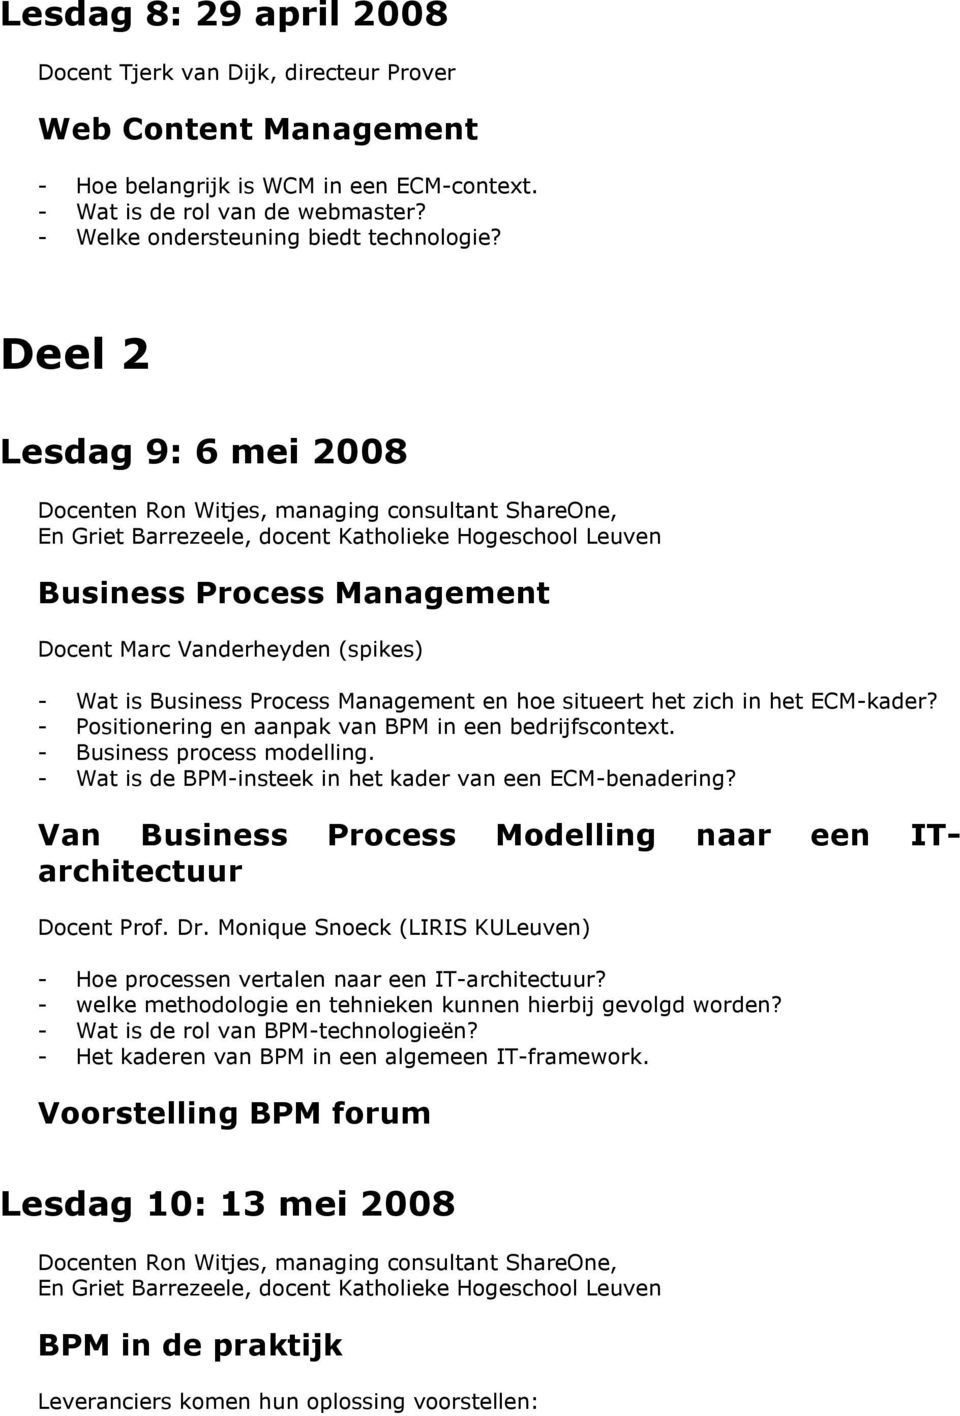 Deel 2 Lesdag 9: 6 mei 2008 Business Process Management Docent Marc Vanderheyden (spikes) - Wat is Business Process Management en hoe situeert het zich in het ECM-kader?